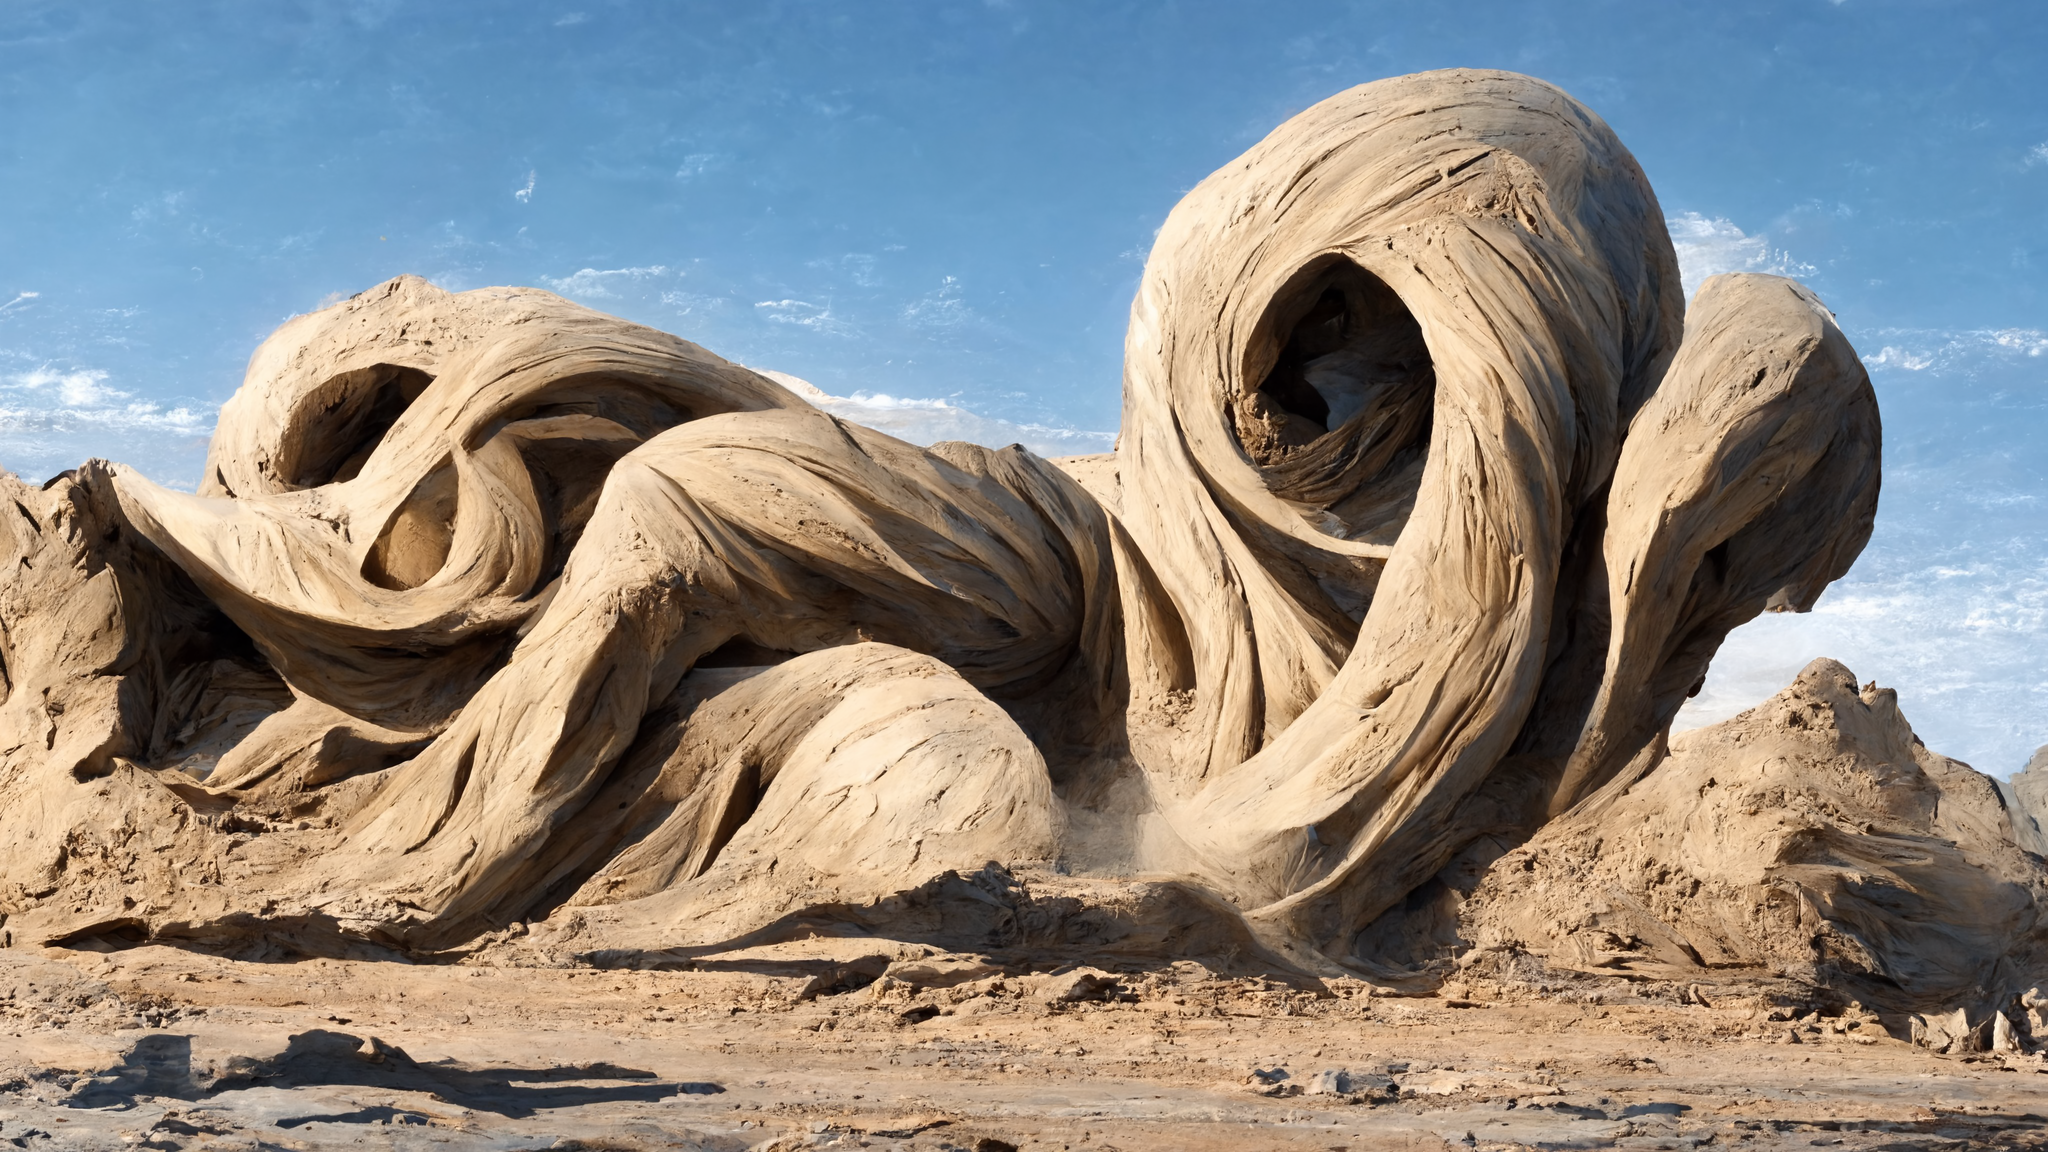 Sand Covered Desert Landscape Artwork 2048x1152